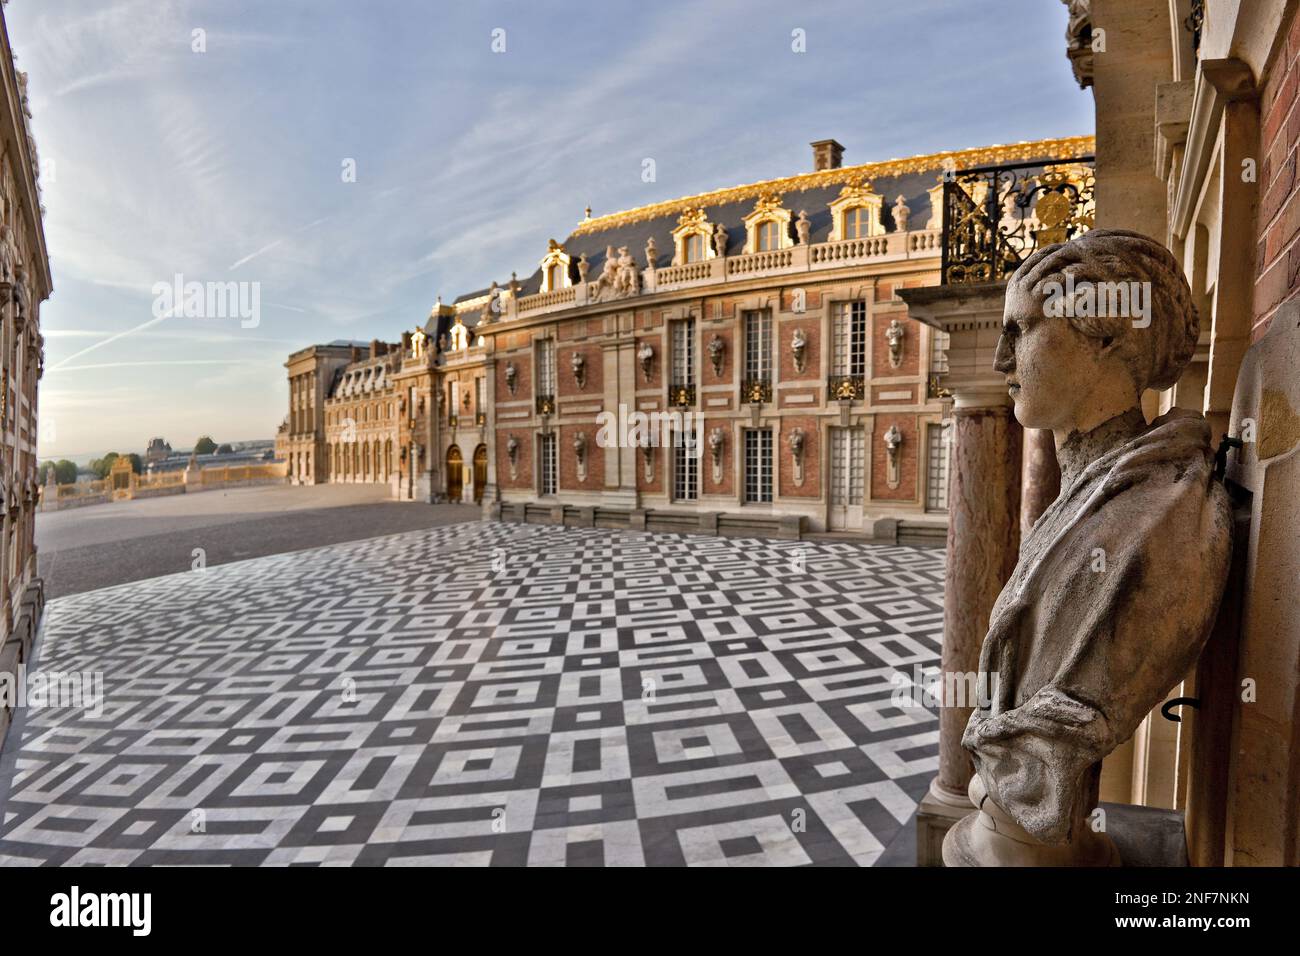 Depuis le nord ouest, vue de la cour de Marbre, vitrine eblouissante des mariages de materiaux et des infinis jeux de couleurs a Versailles. Stock Photo